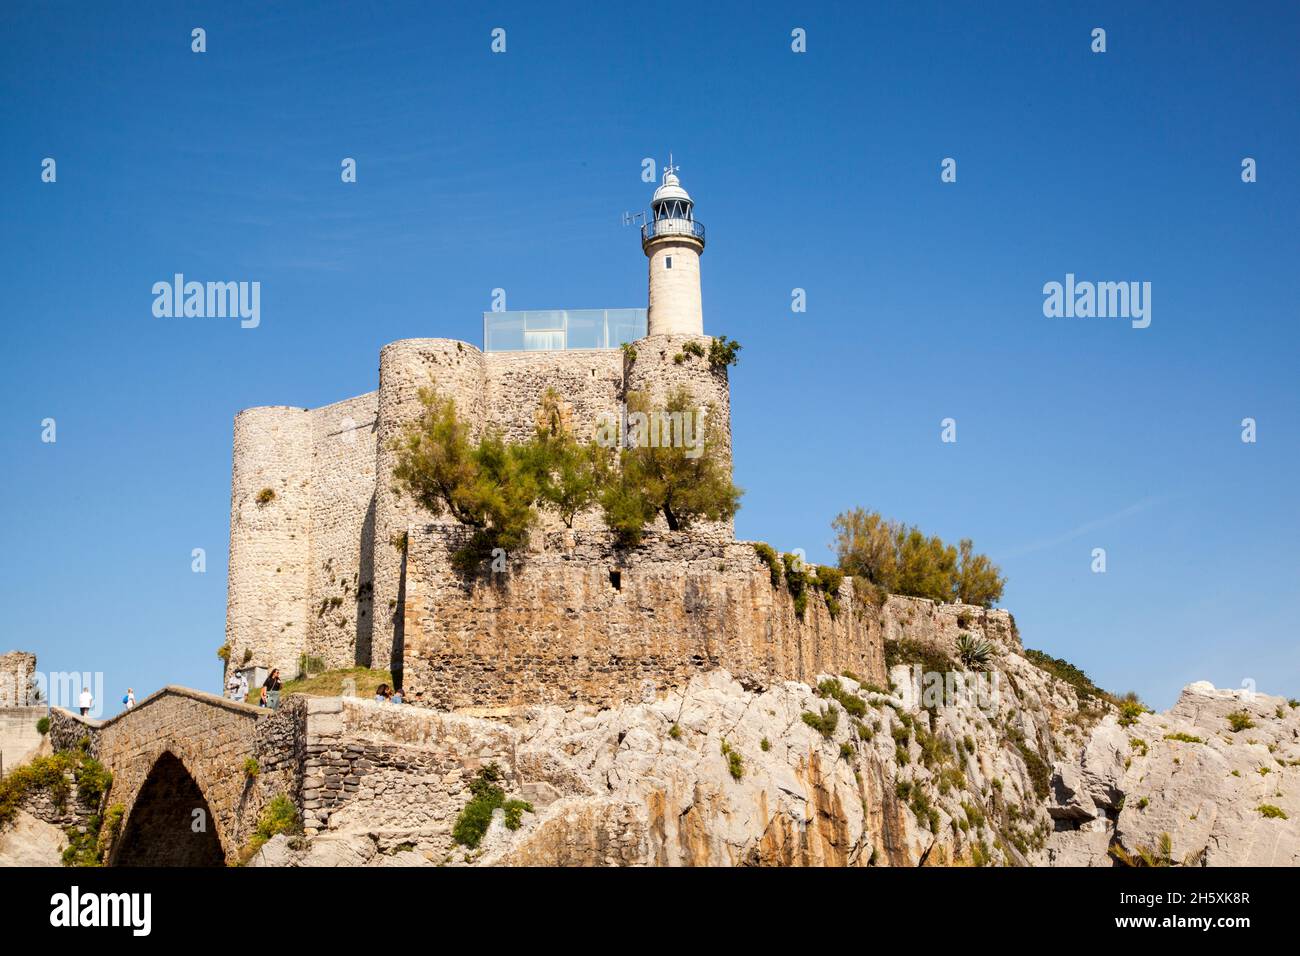 Le château médiéval de Santa Ana abritait désormais le phare du port de pêche espagnol et de la station balnéaire de Castro Urdiales, dans le nord de l'Espagne Banque D'Images